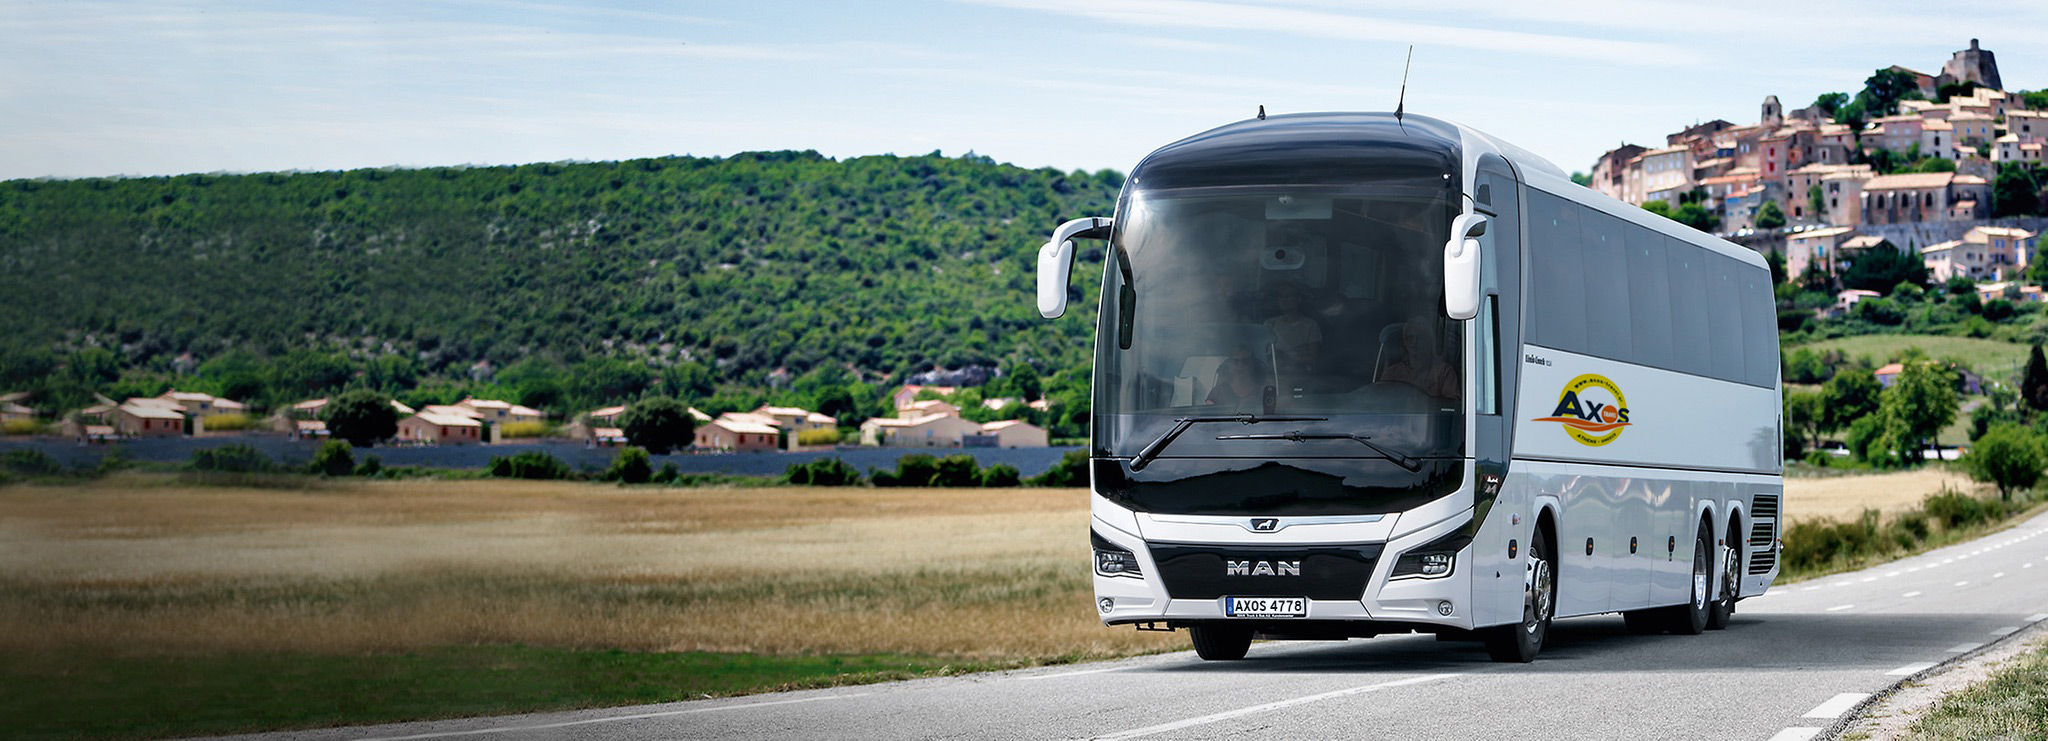 Λεοφορείο του Axos travel